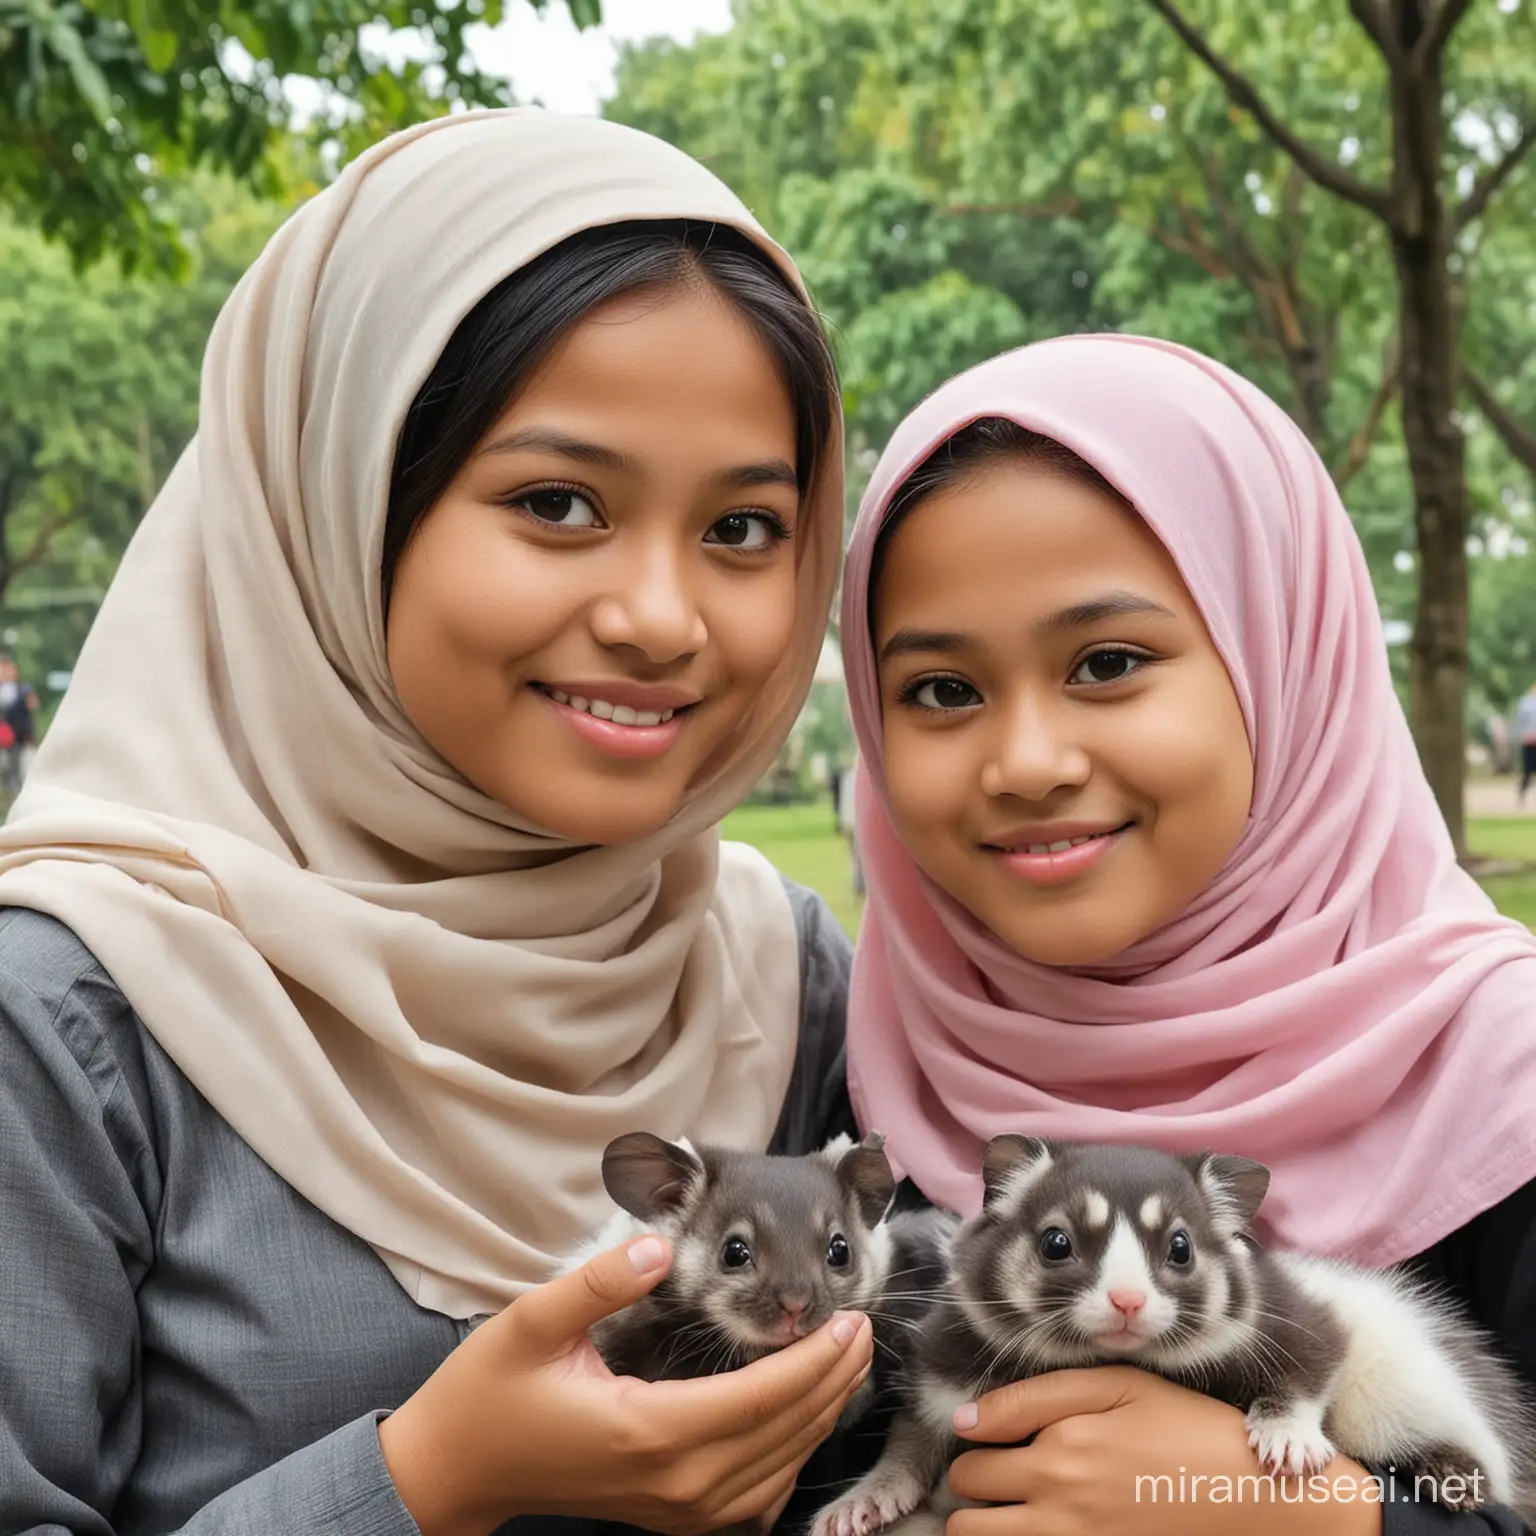 realistis seorang perempuan indonesia umur 12 tahun memakai hijab duduk di taman bersama adik perempuannya umur 2 tahun, gemuk, tidak memakai hijab, rambut panjang berponi, memegang sugar glider, HD